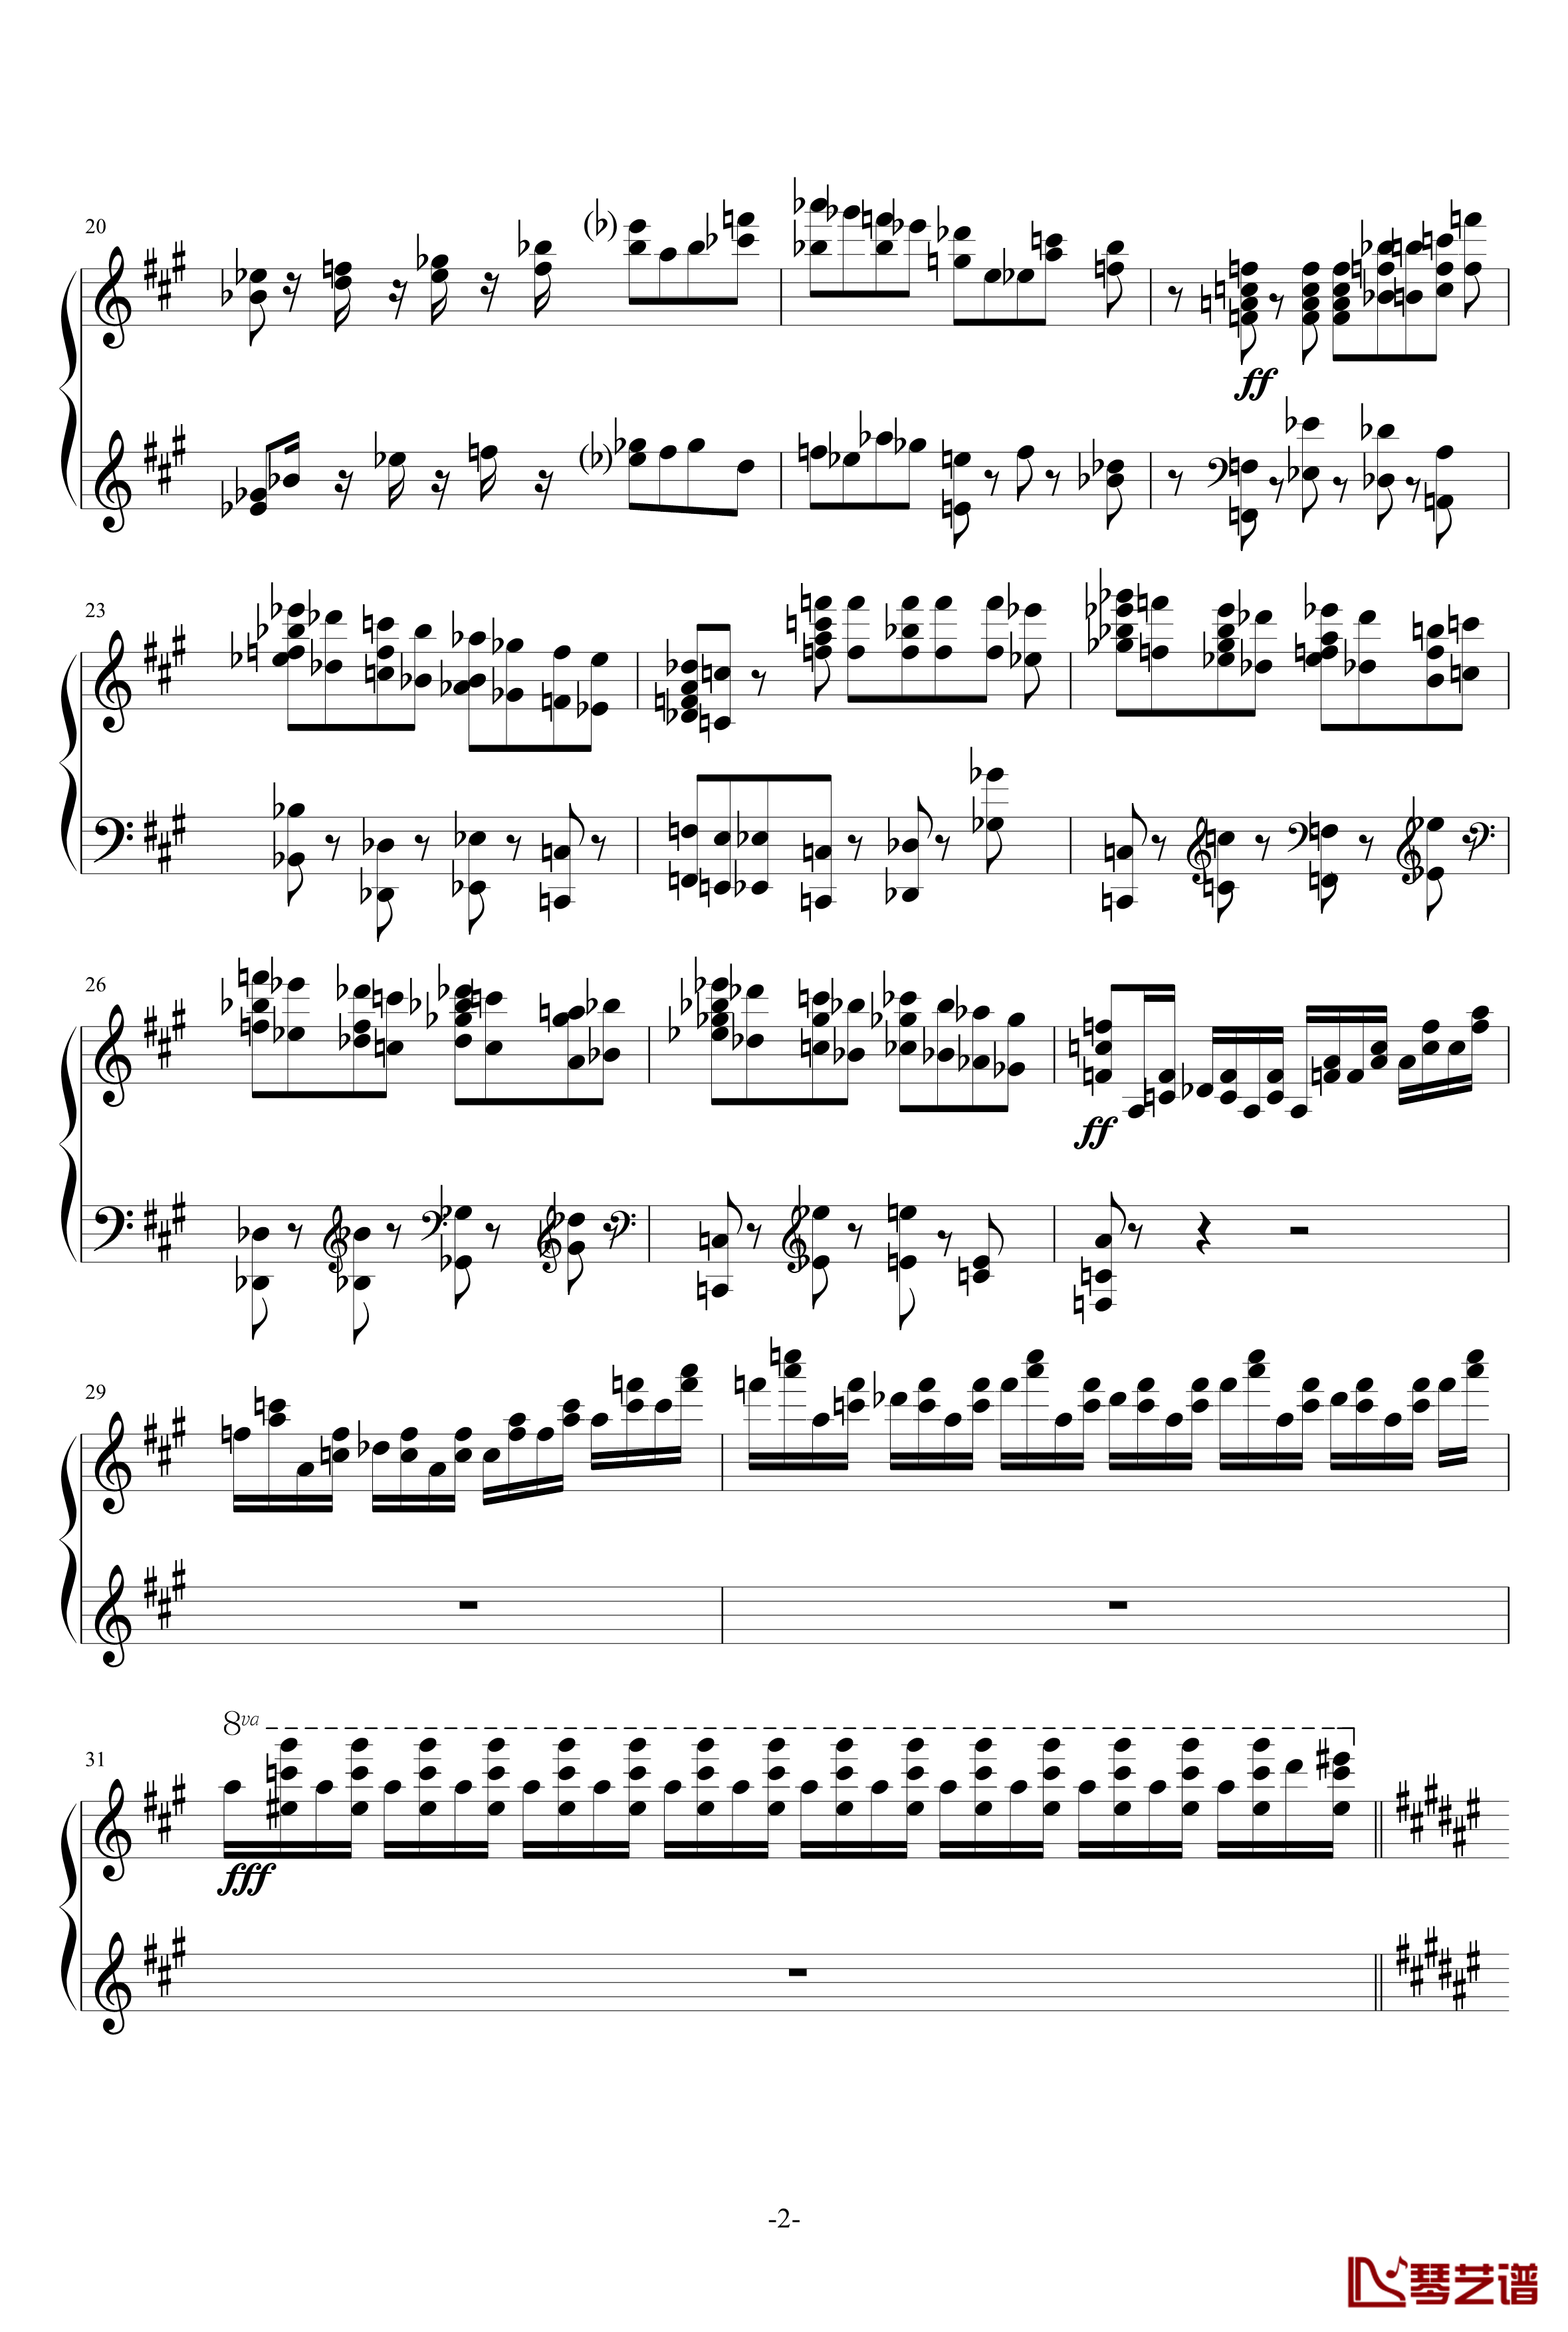 伊比利亚塞维利亚的圣体祭钢琴谱-阿尔贝兹尼2